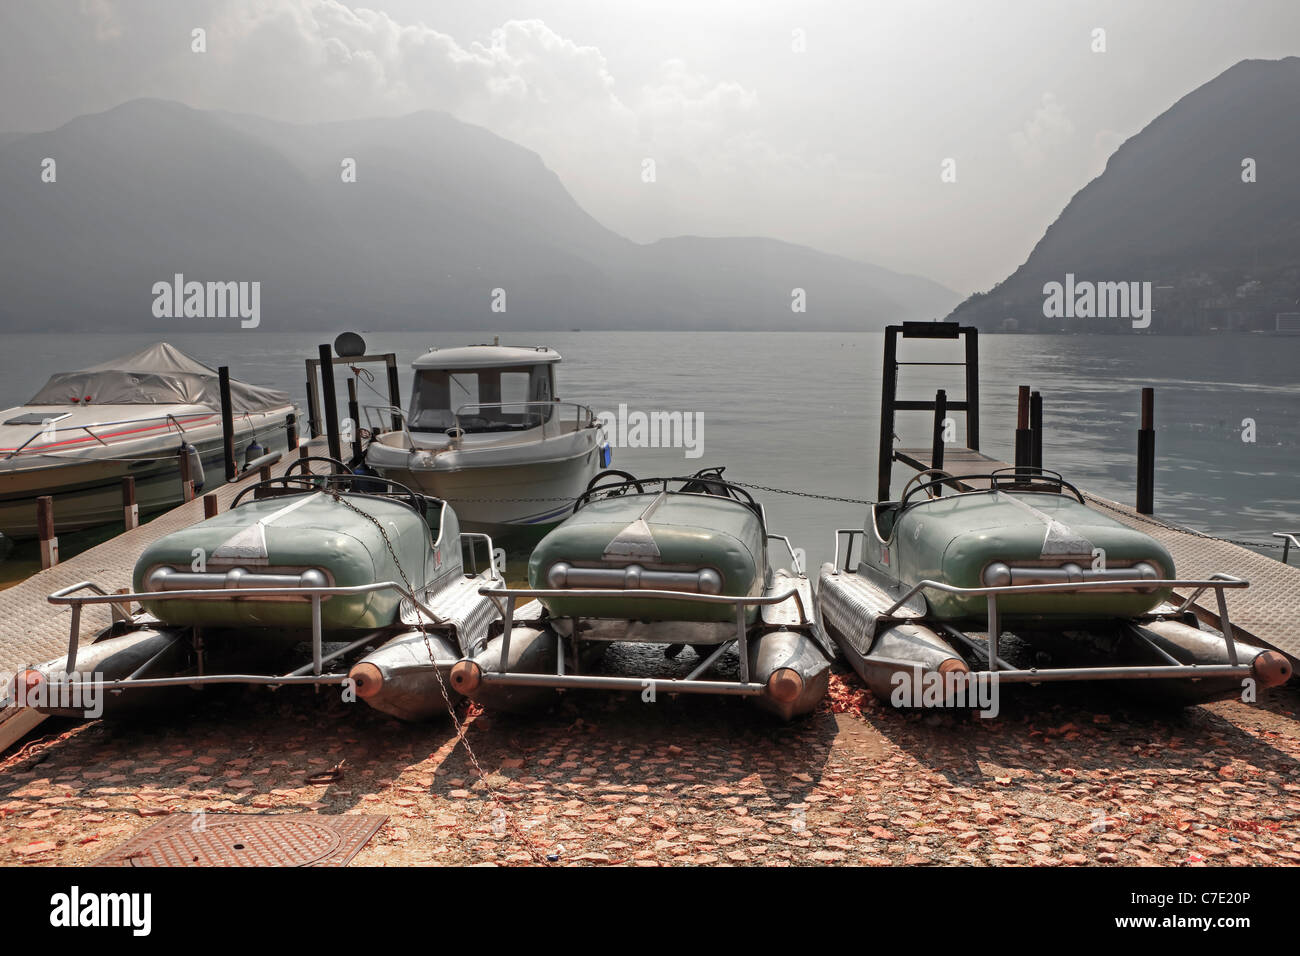 old retro style pedal boats on the Lago di Lugano Stock Photo